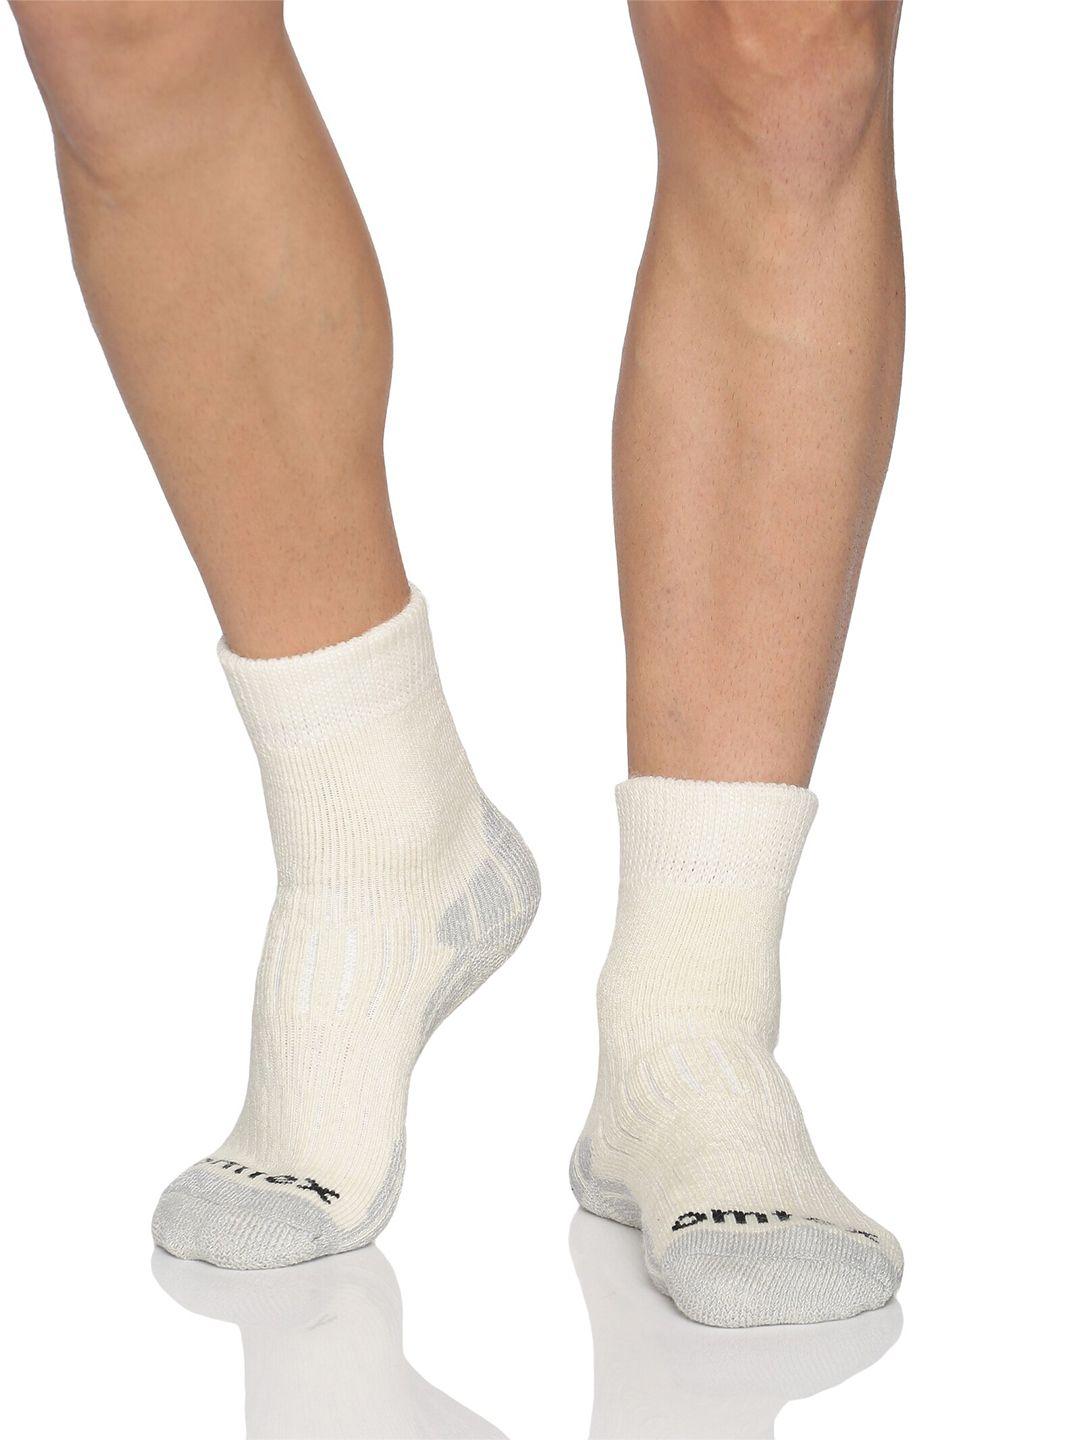 omtex men pack of 2 patterned cotton calf length socks